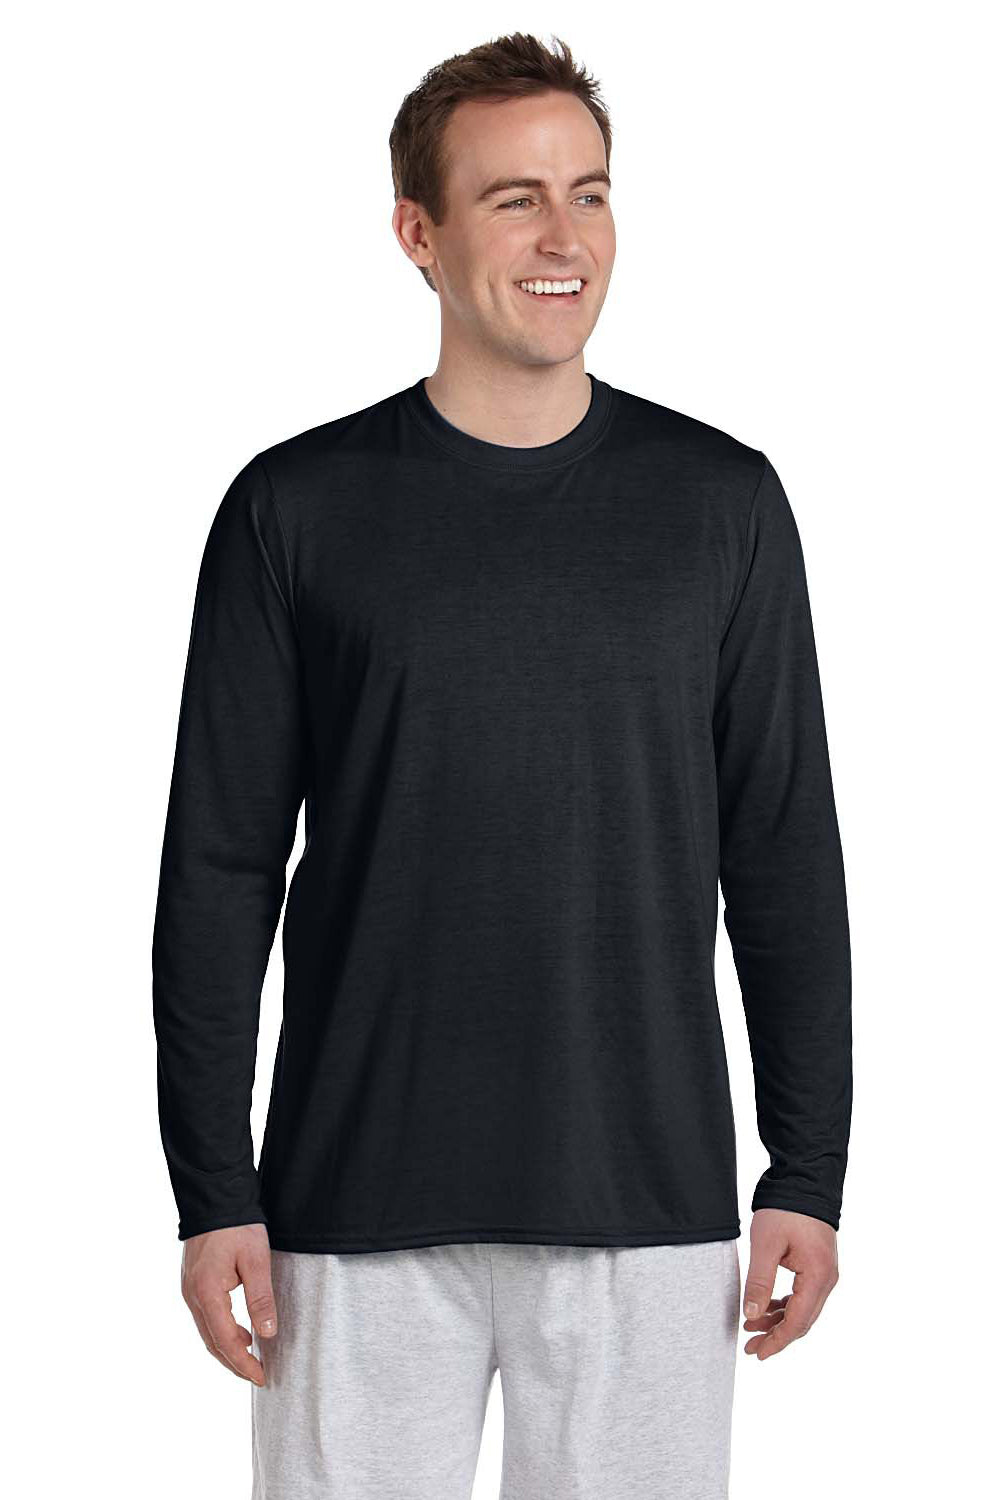 Gildan G424 Mens Performance Jersey Moisture Wicking Long Sleeve Crewneck T-Shirt Black Front